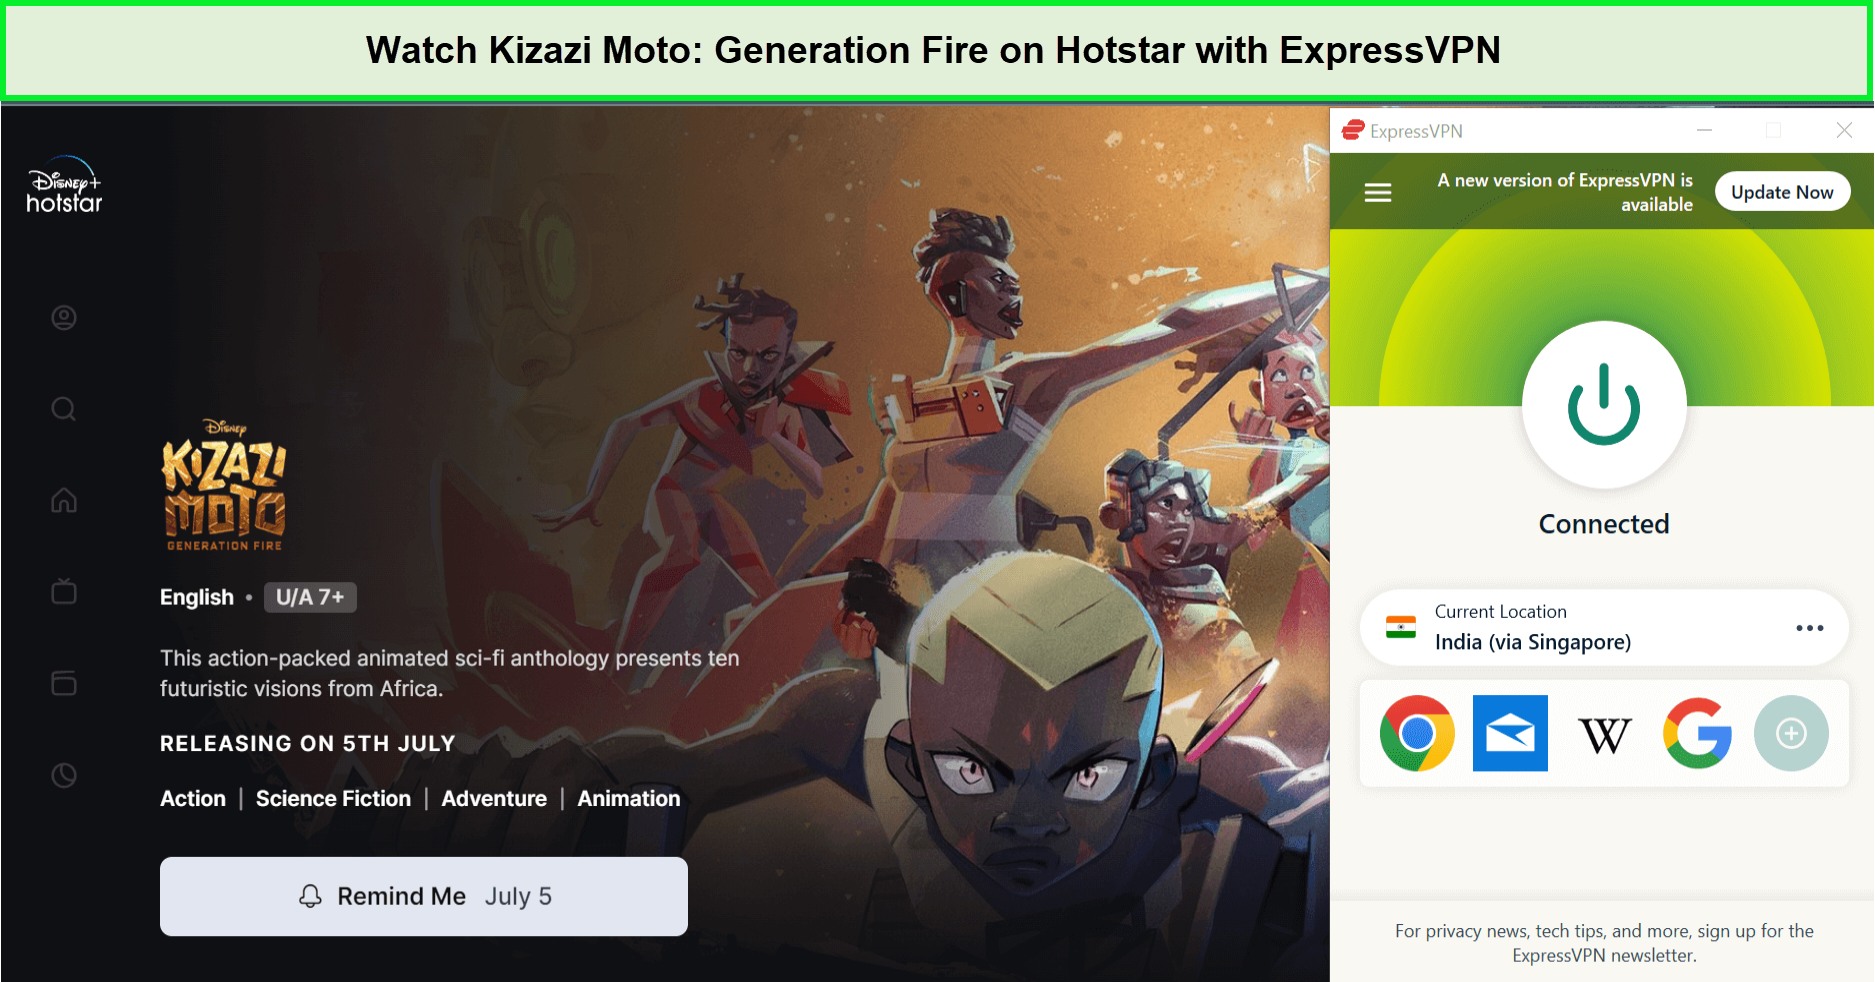 Watch-Kizazi-Moto-Generation-Fire-in-UK-on-Hotstar-with-ExpressVPN